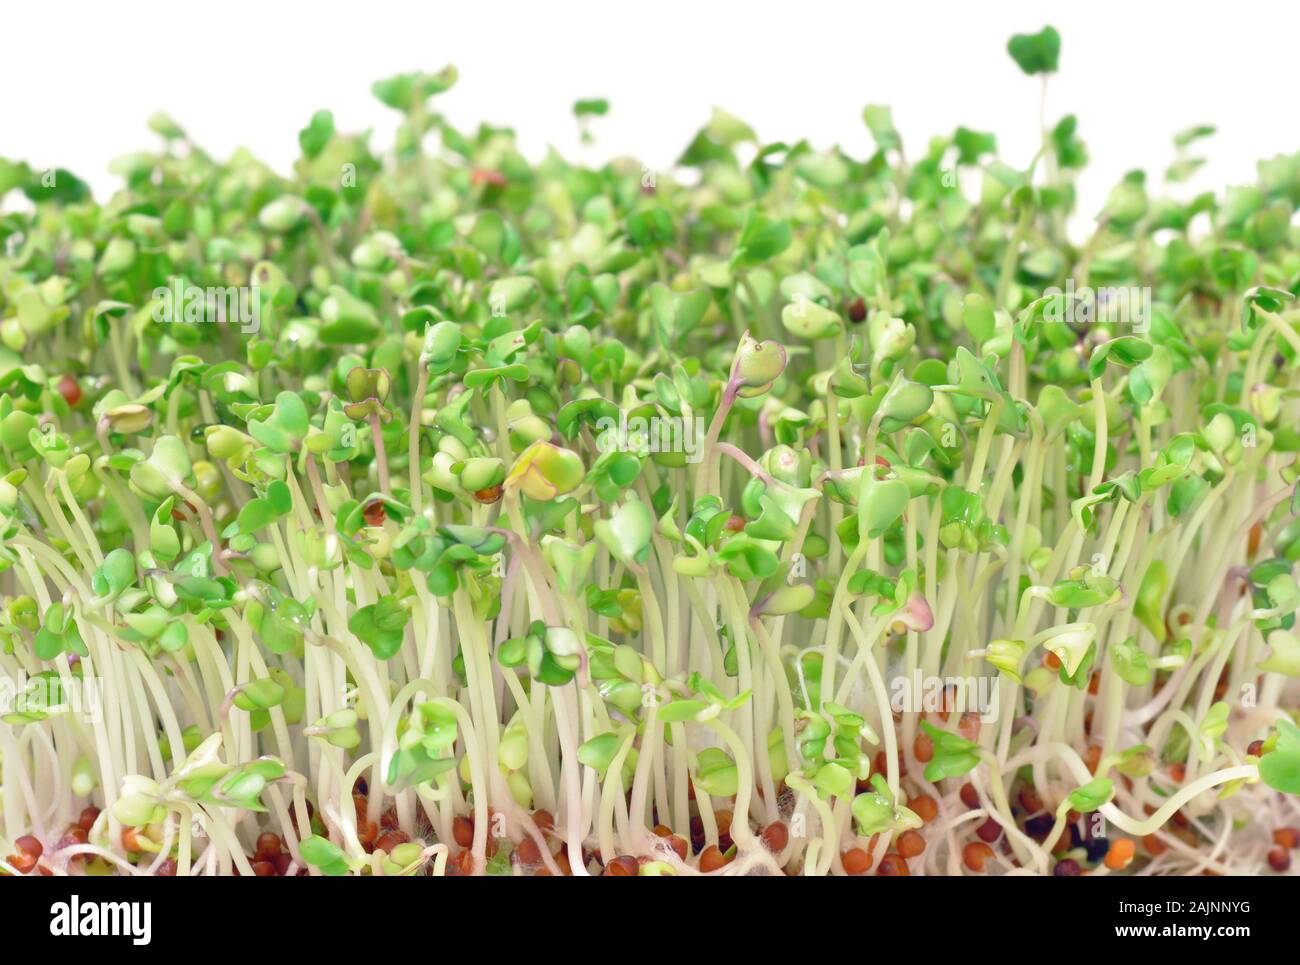 Germogli di broccoli verdi giovani, un ingrediente alimentare per insalate, panini e piatti sani Foto Stock